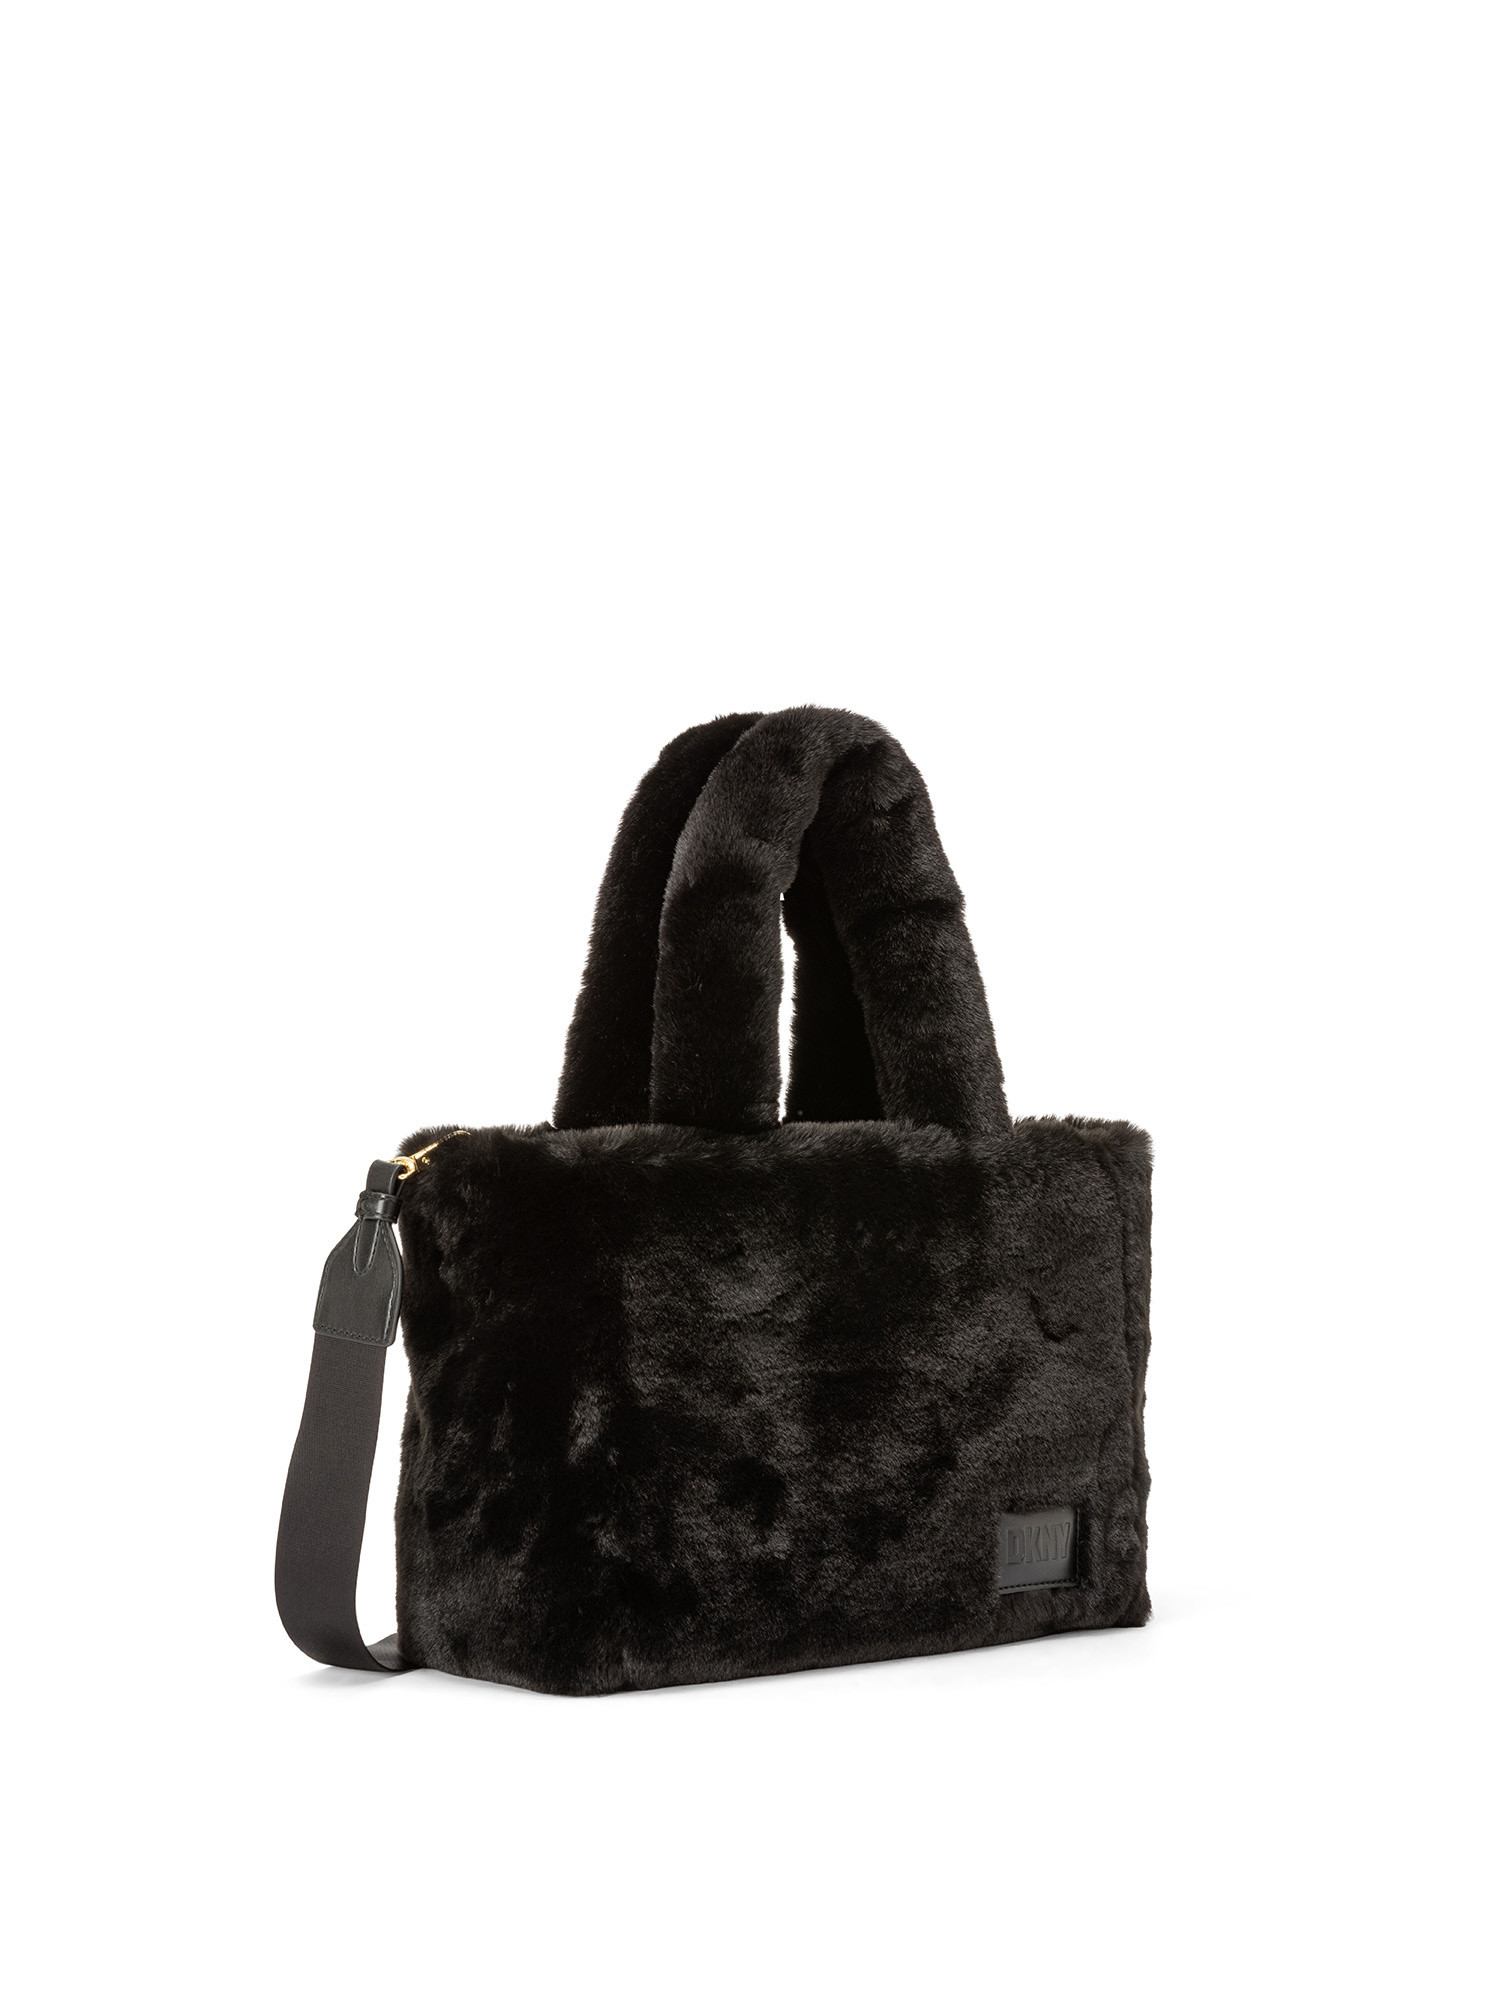 DKNY - Shoulder bag, Black, large image number 1